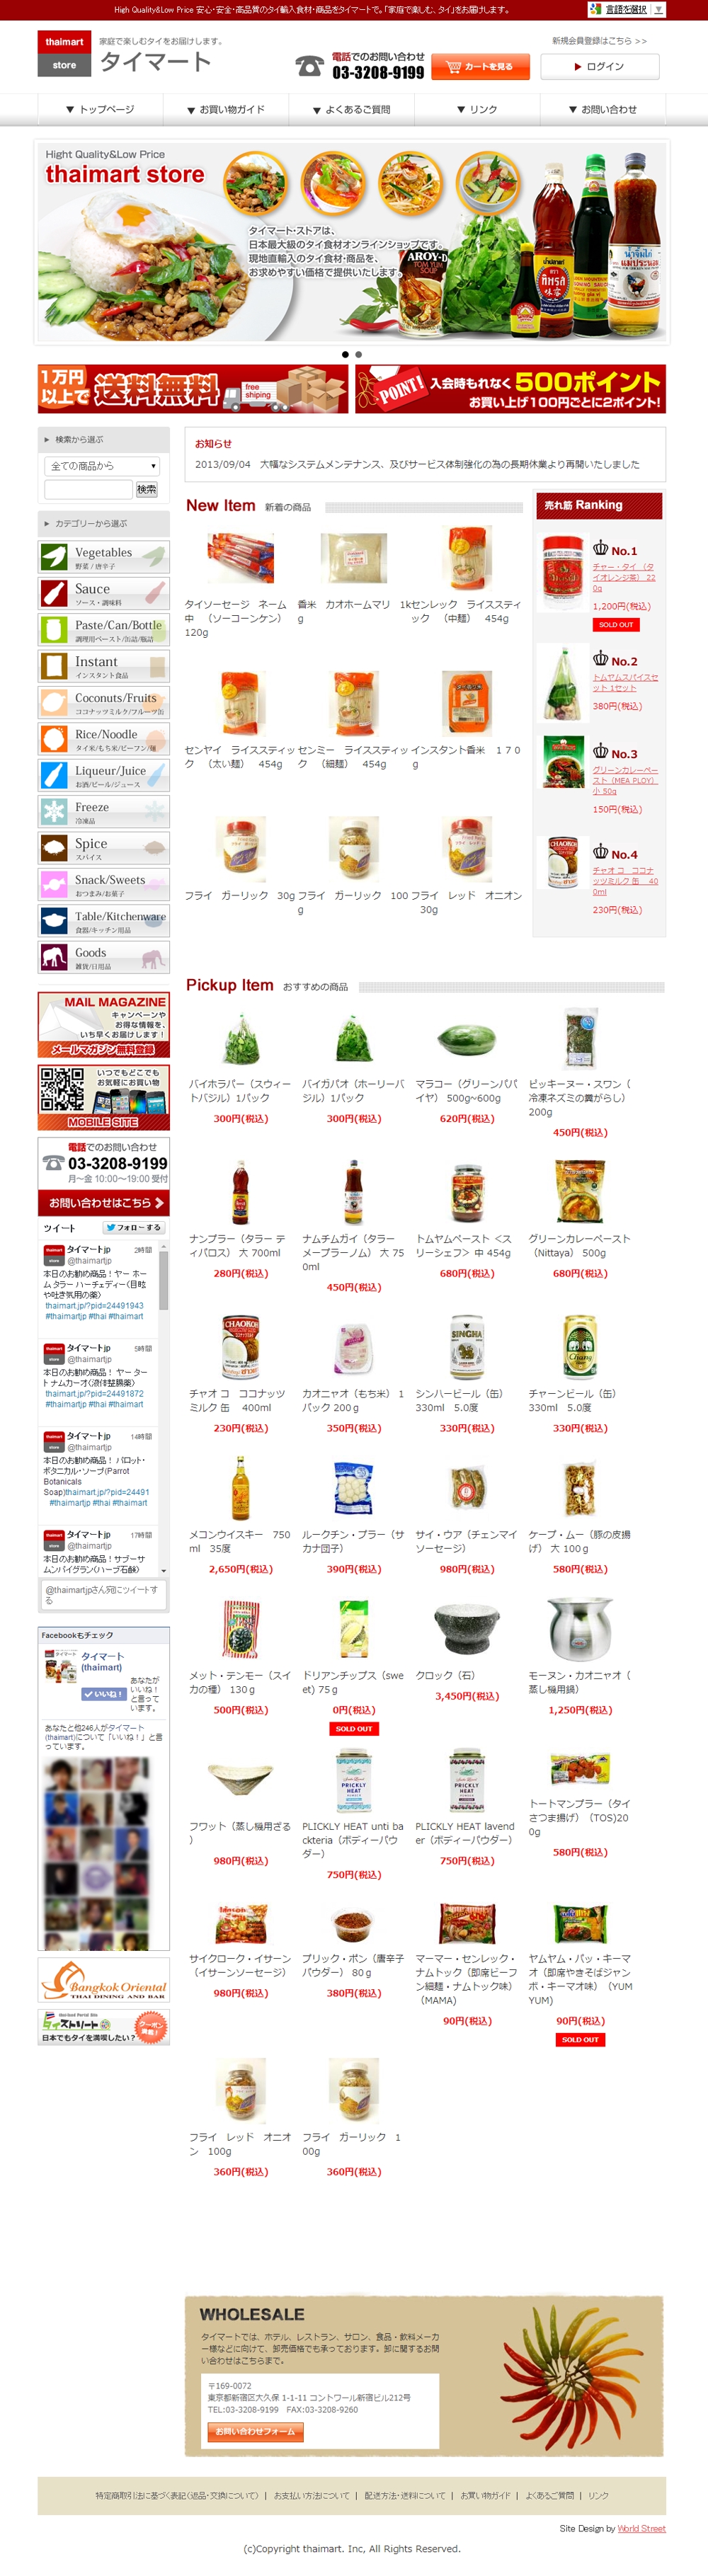 タイ食材通販サイト「タイマート」カラーミーショップカスタマイズ